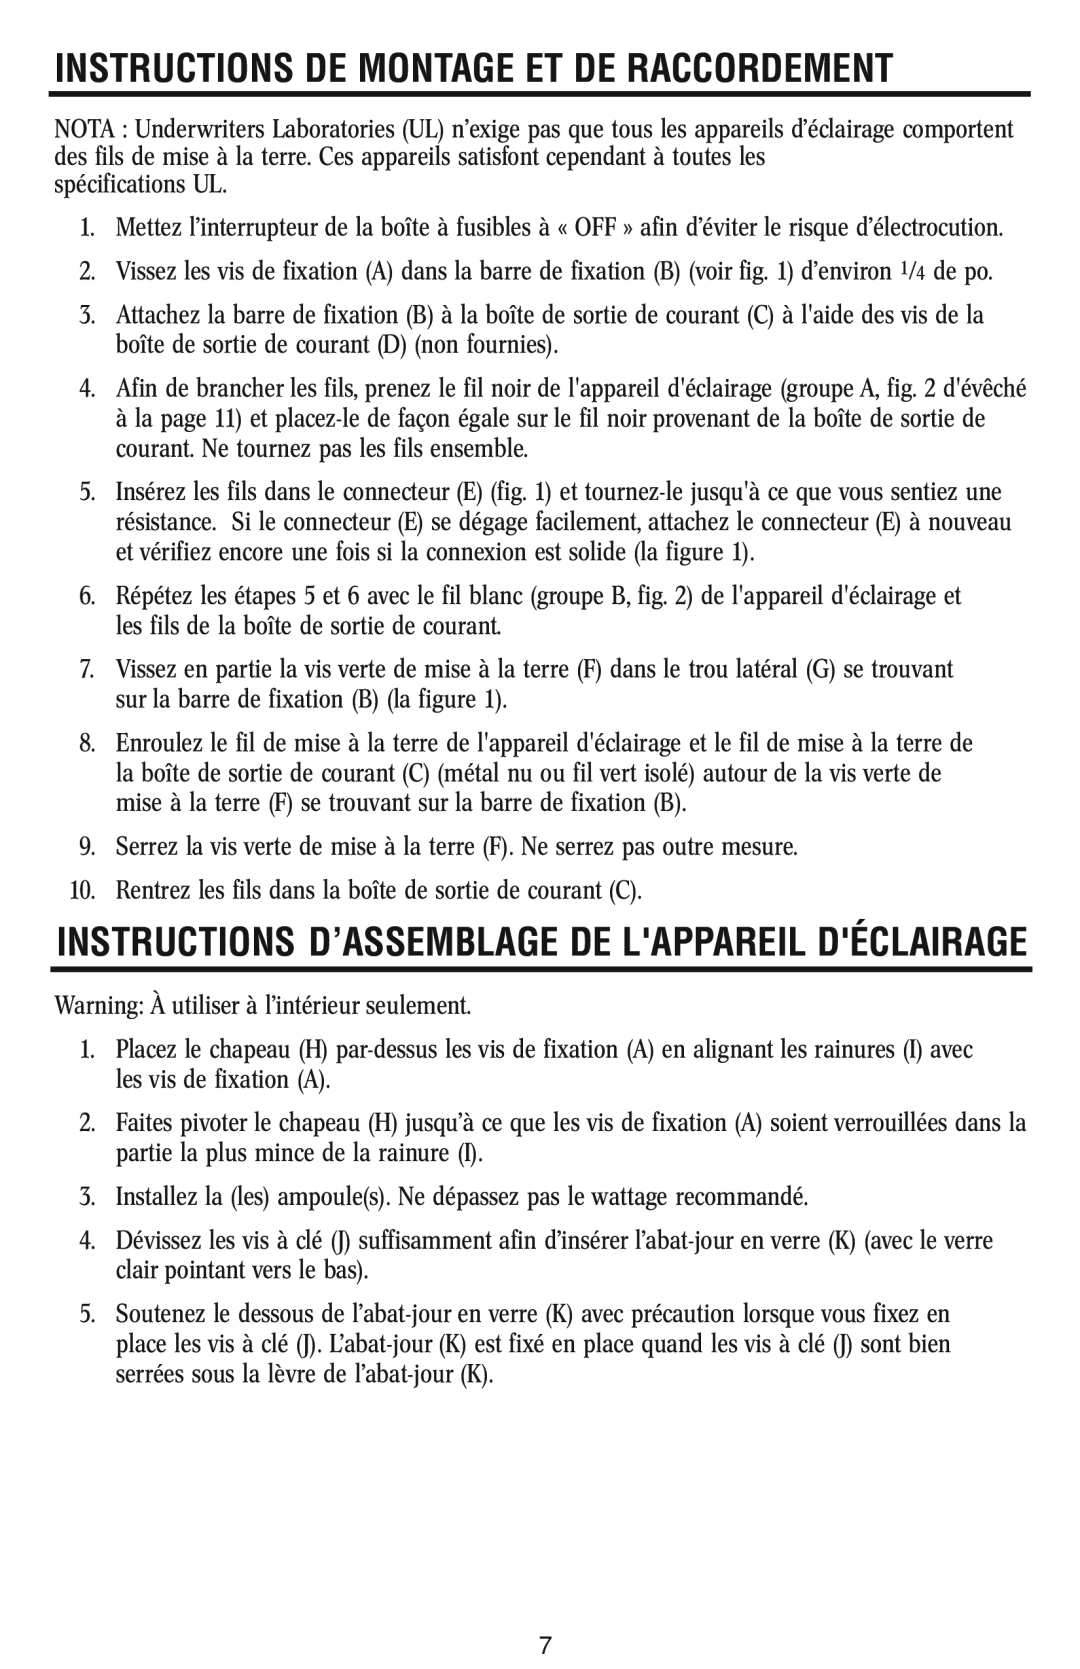 Westinghouse w-023 Instructions D’Assemblage De Lappareil Déclairage, Instructions De Montage Et De Raccordement 